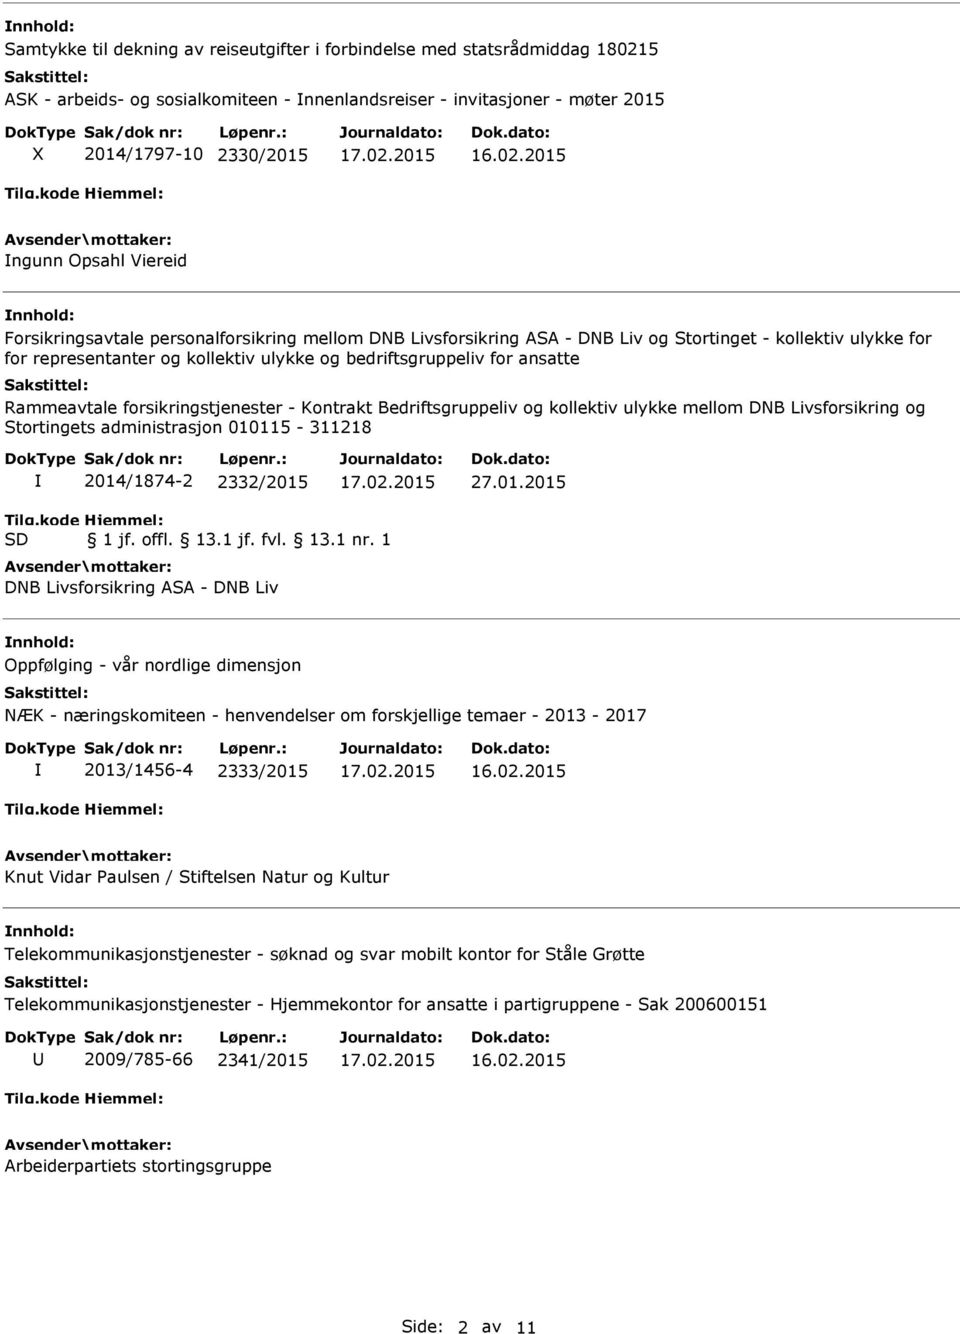 Rammeavtale forsikringstjenester - Kontrakt Bedriftsgruppeliv og kollektiv ulykke mellom DNB Livsforsikring og Stortingets administrasjon 010115-311218 2014/1874-2 2332/2015 27.01.2015 Tilg.